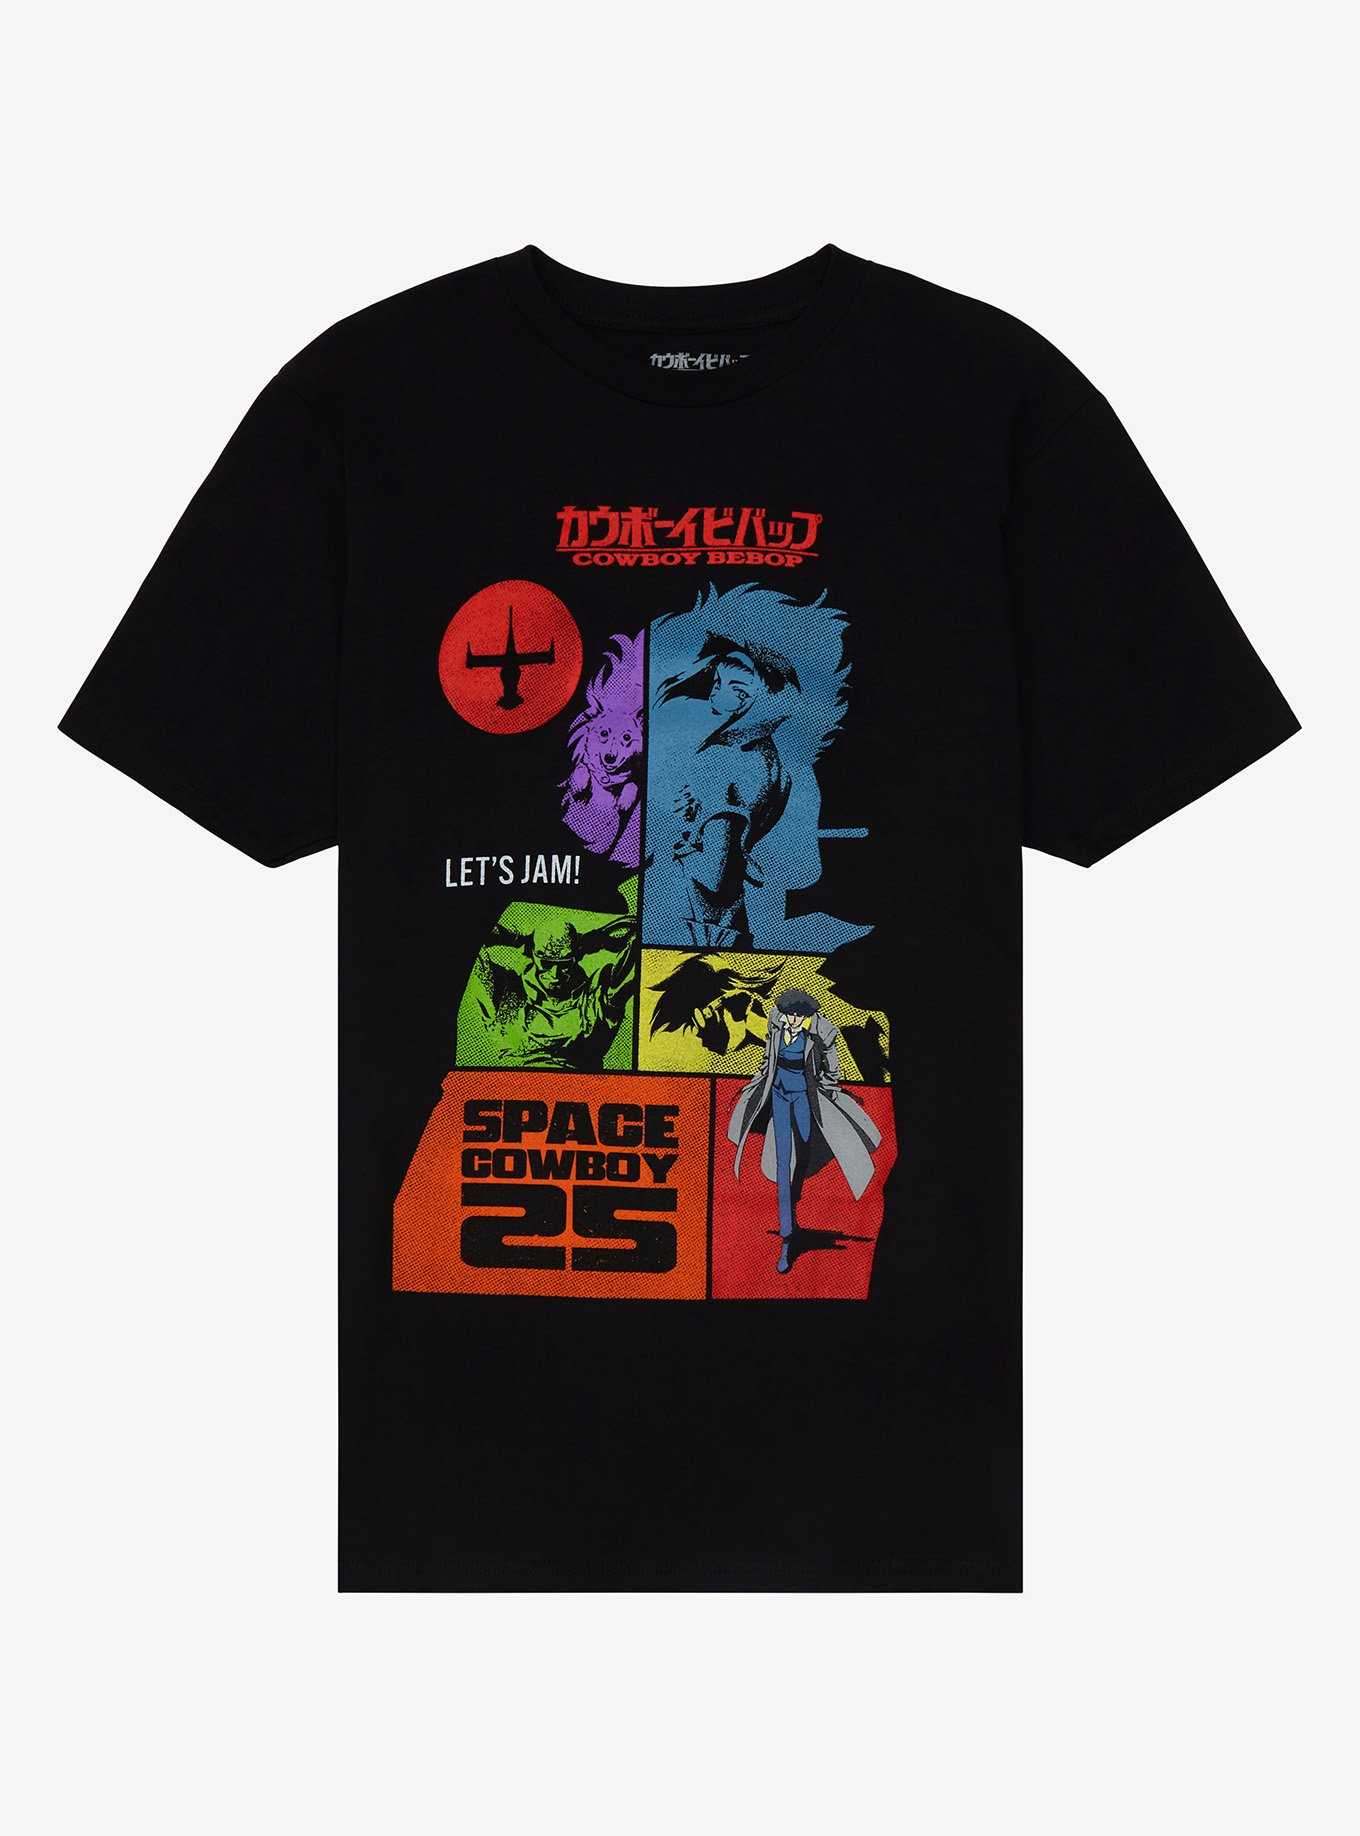 Cowboy Bebop 25th Anniversary Tonal T-Shirt, , hi-res